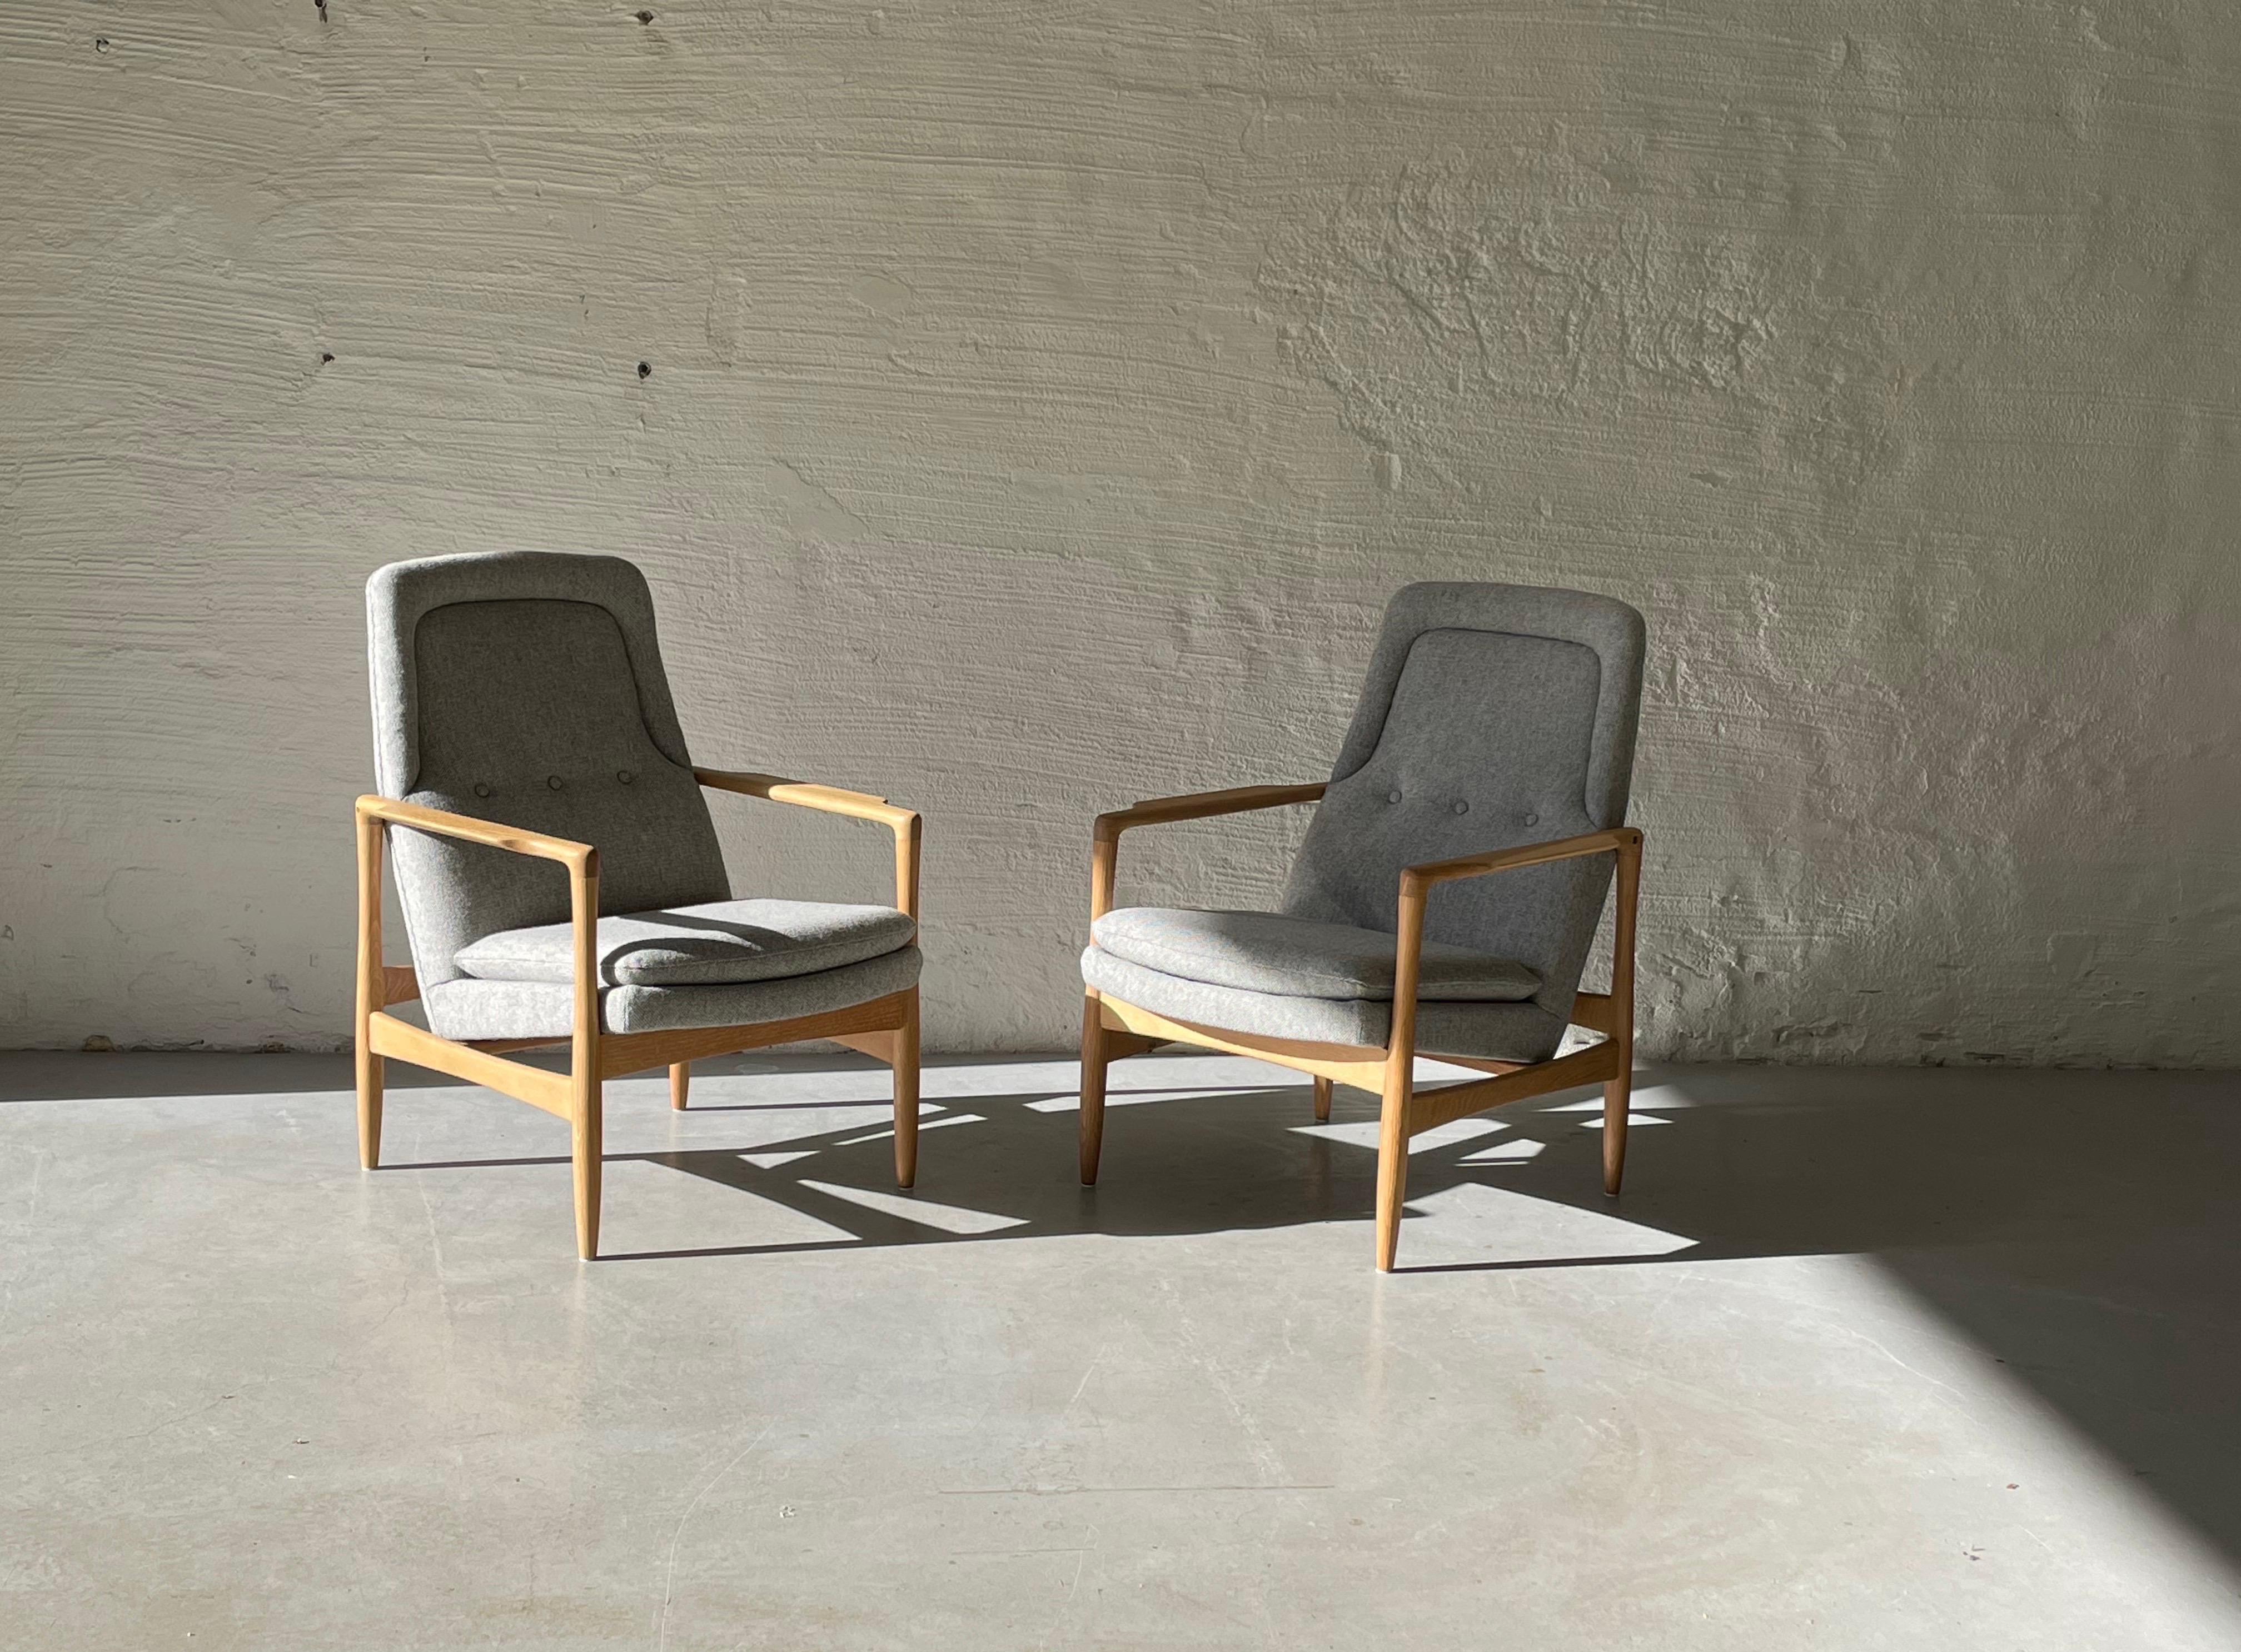 Verkauf von zwei Sesseln Modell Lobby entworfen von Torbjørn Afdal  für Bruksbo Tegnekontor, 1957. Produziert von Svein Bjørneng møbelfabrikk, Norwegen
Die Stühle sind mit einem Wollstoff von Gudbrandsdalens Uldvarefabrikk neu gepolstert und in sehr